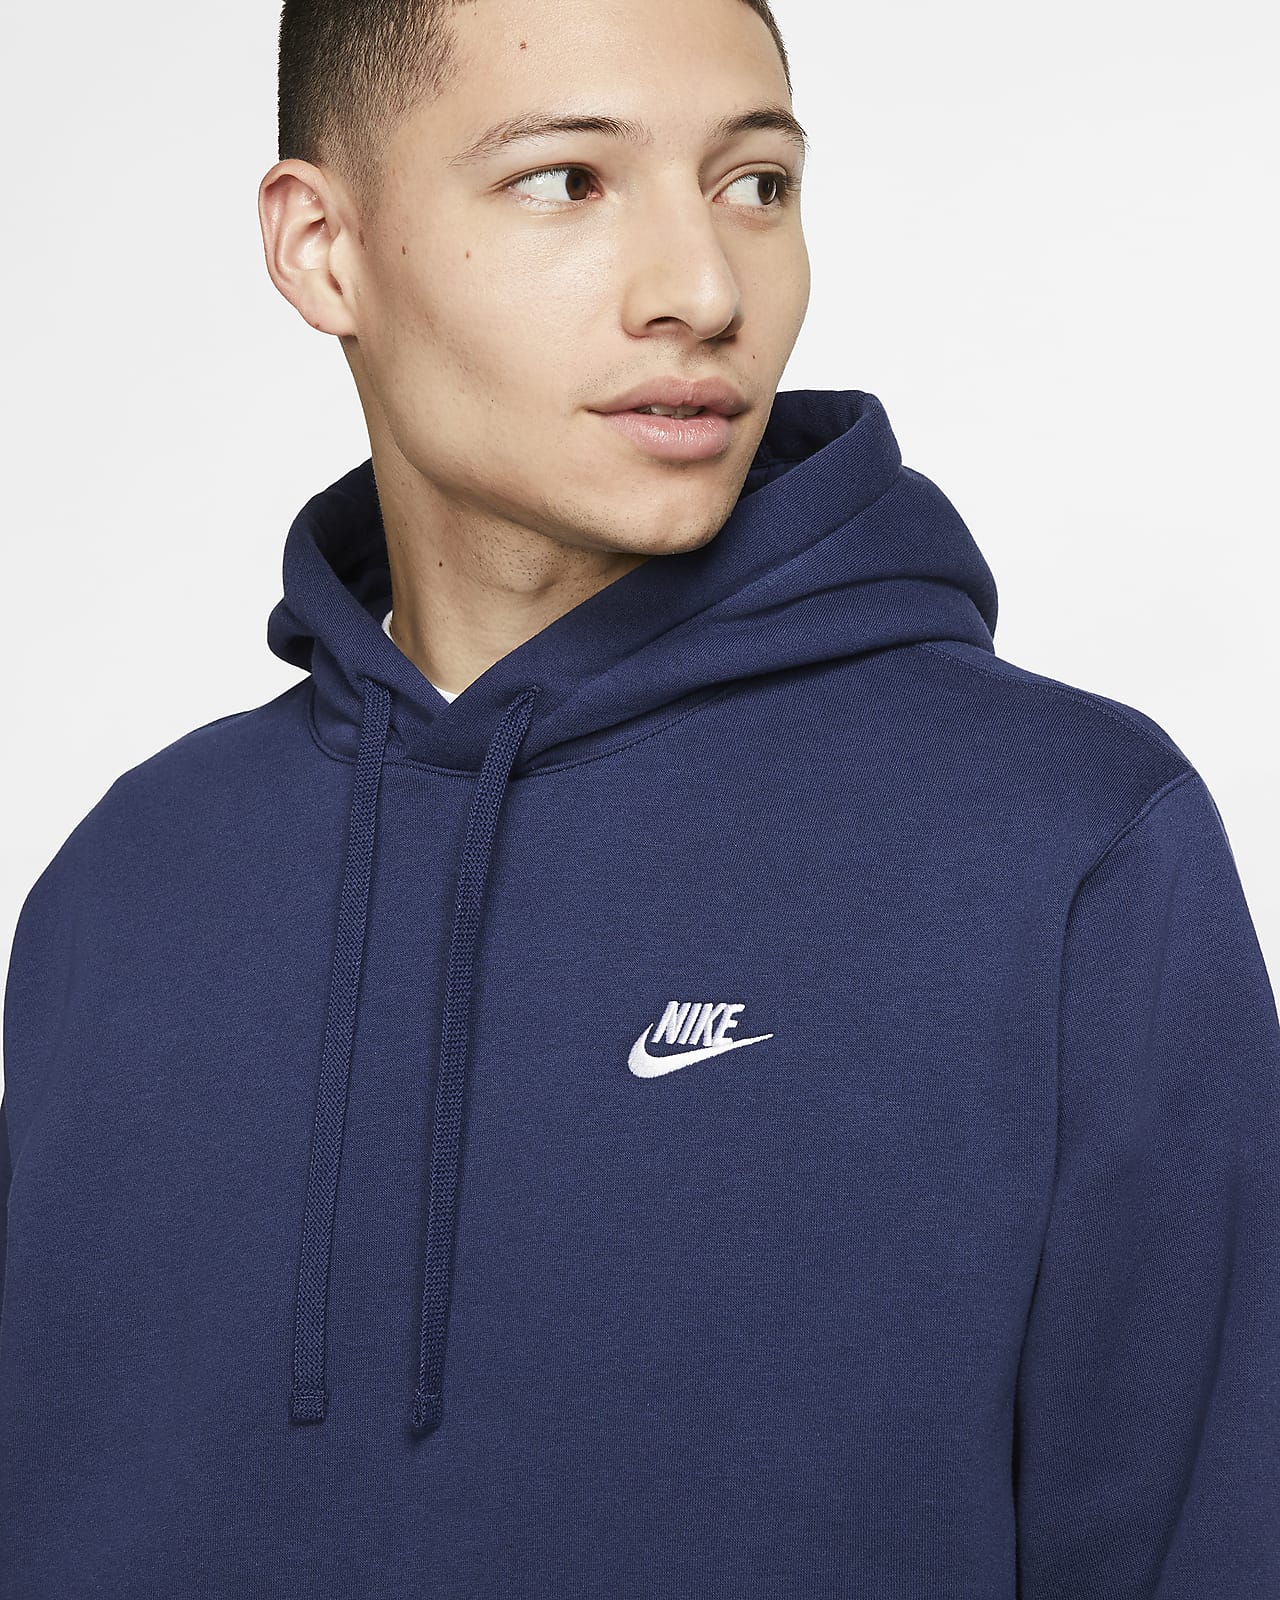 Nike Hoodie. Pullover Club Fleece Sportswear